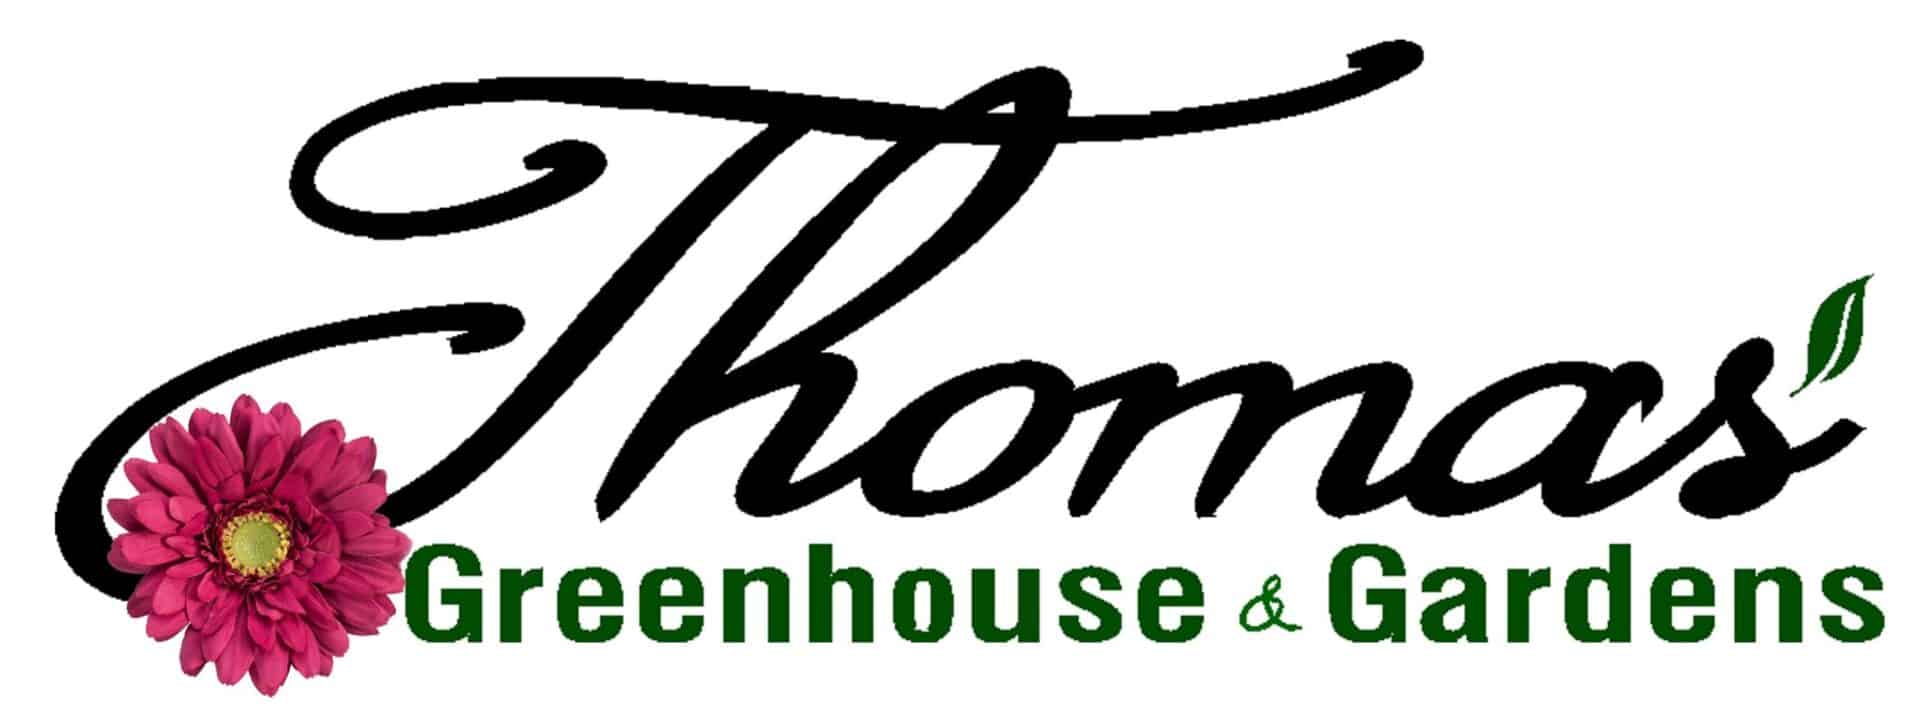 Thomas Greenhouse & Gardens - Thomas Greenhouse & Gardens